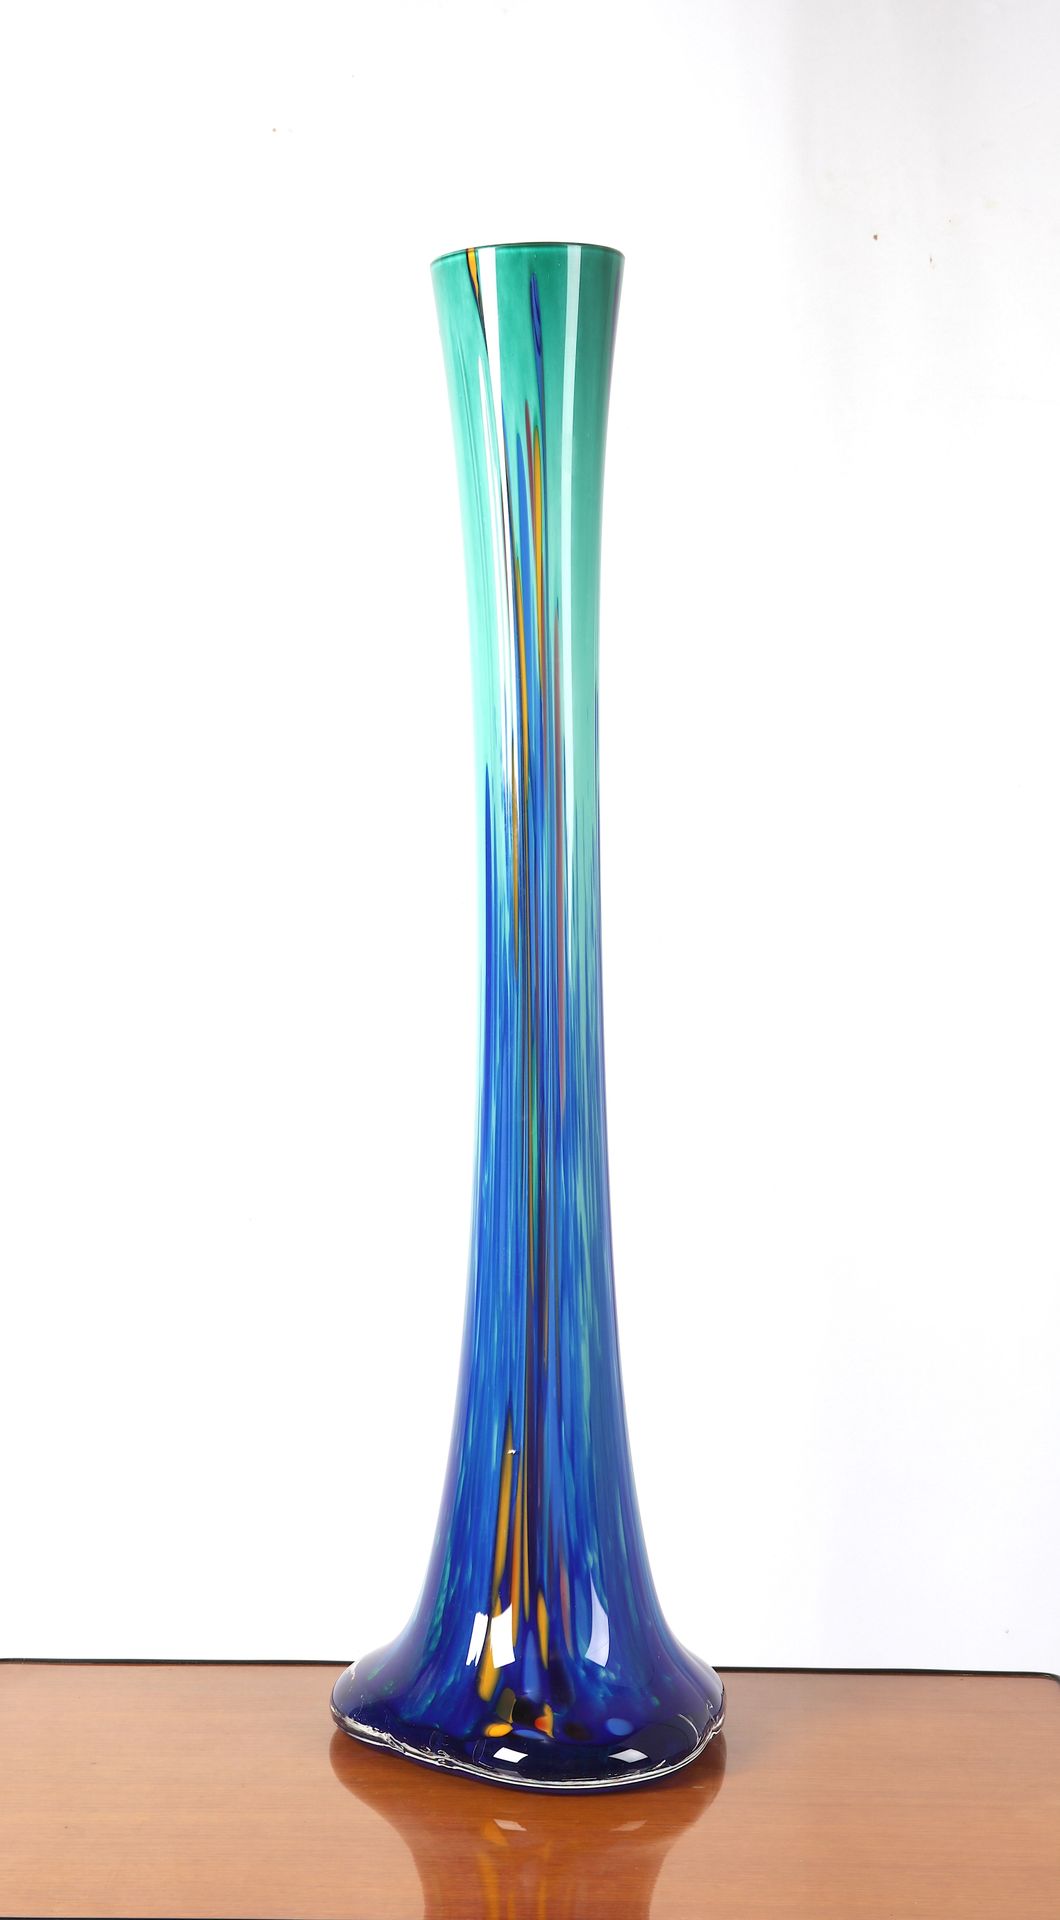 Null 
Verrerie d'Art de Soisy-sur-École，蓝绿色玻璃大花瓶，（状态极好），高：70厘米。